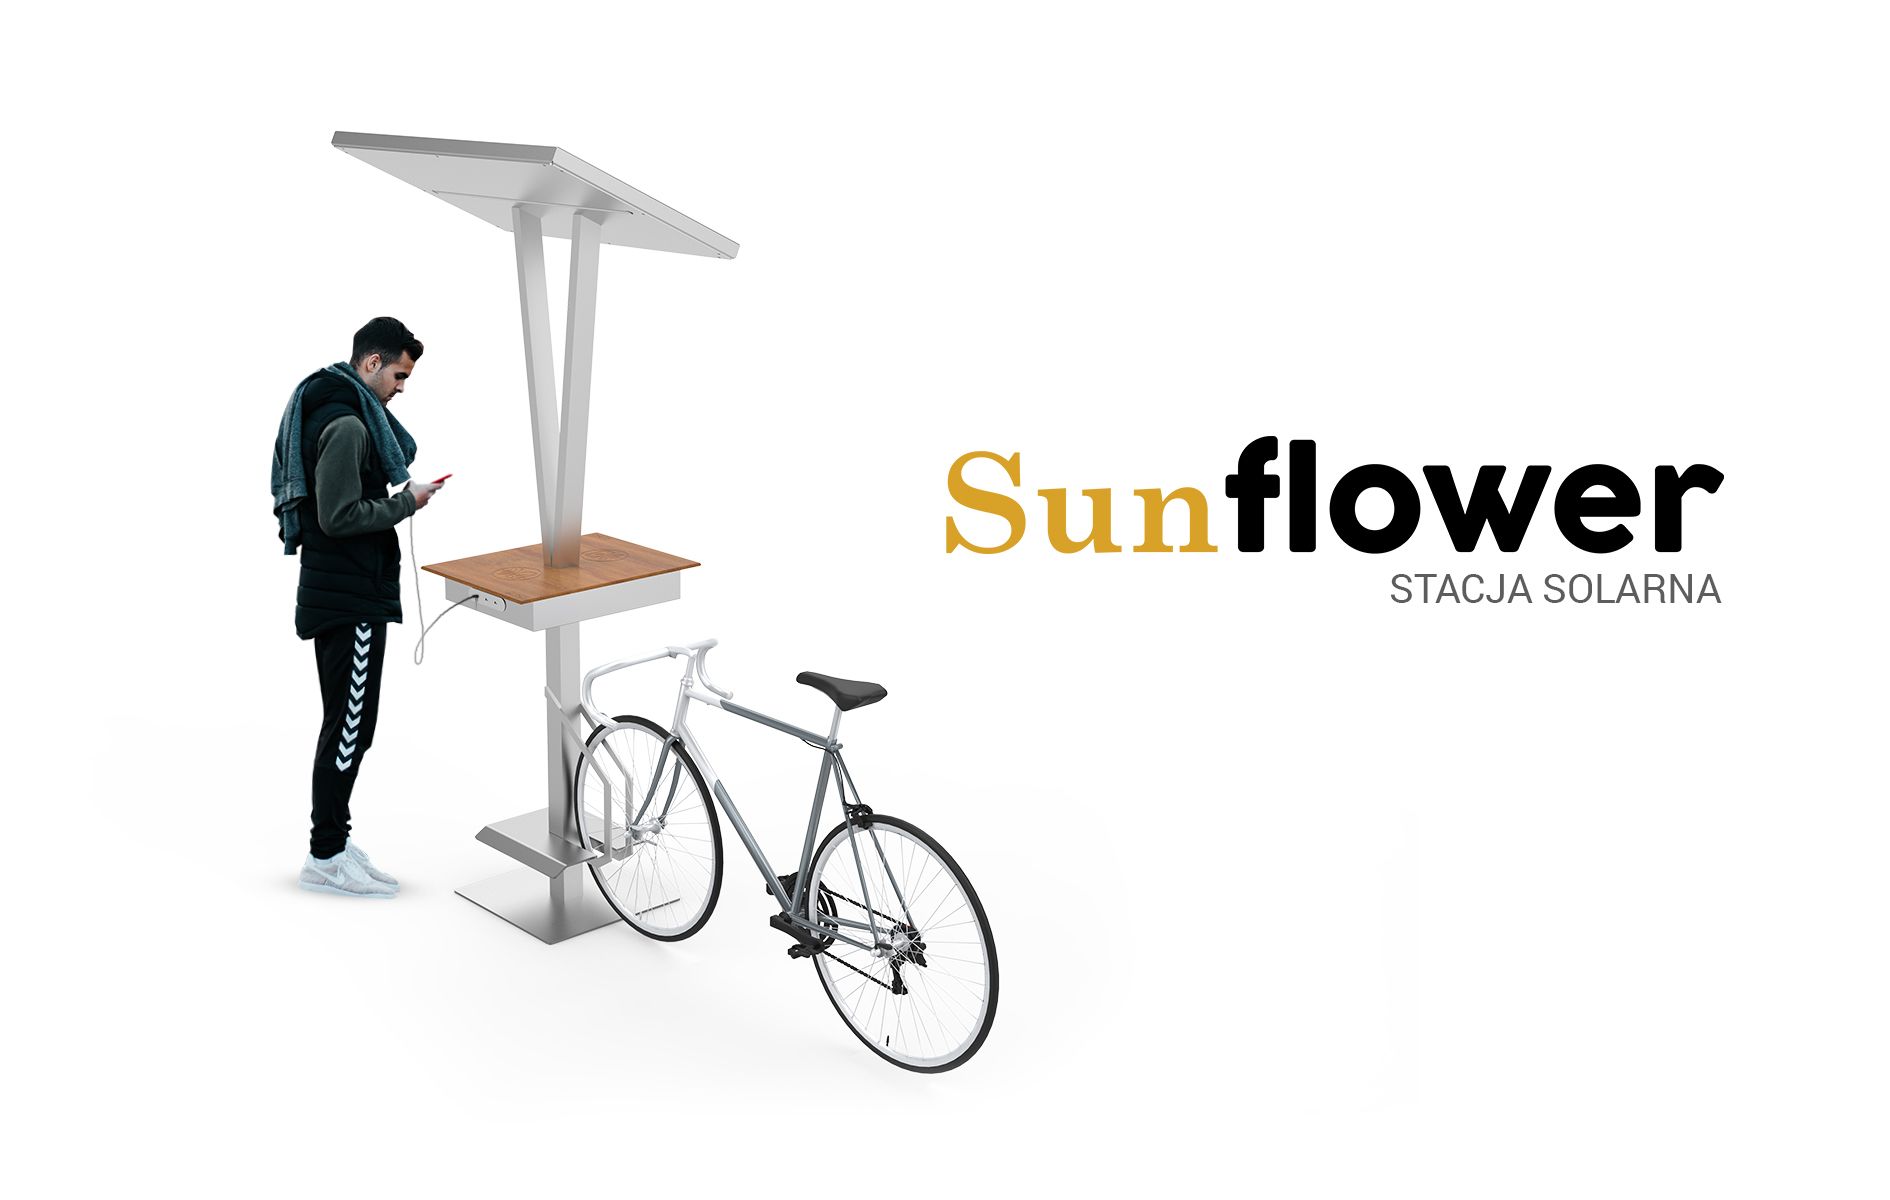 Sunflower stacja solarna | ZANO Smart City